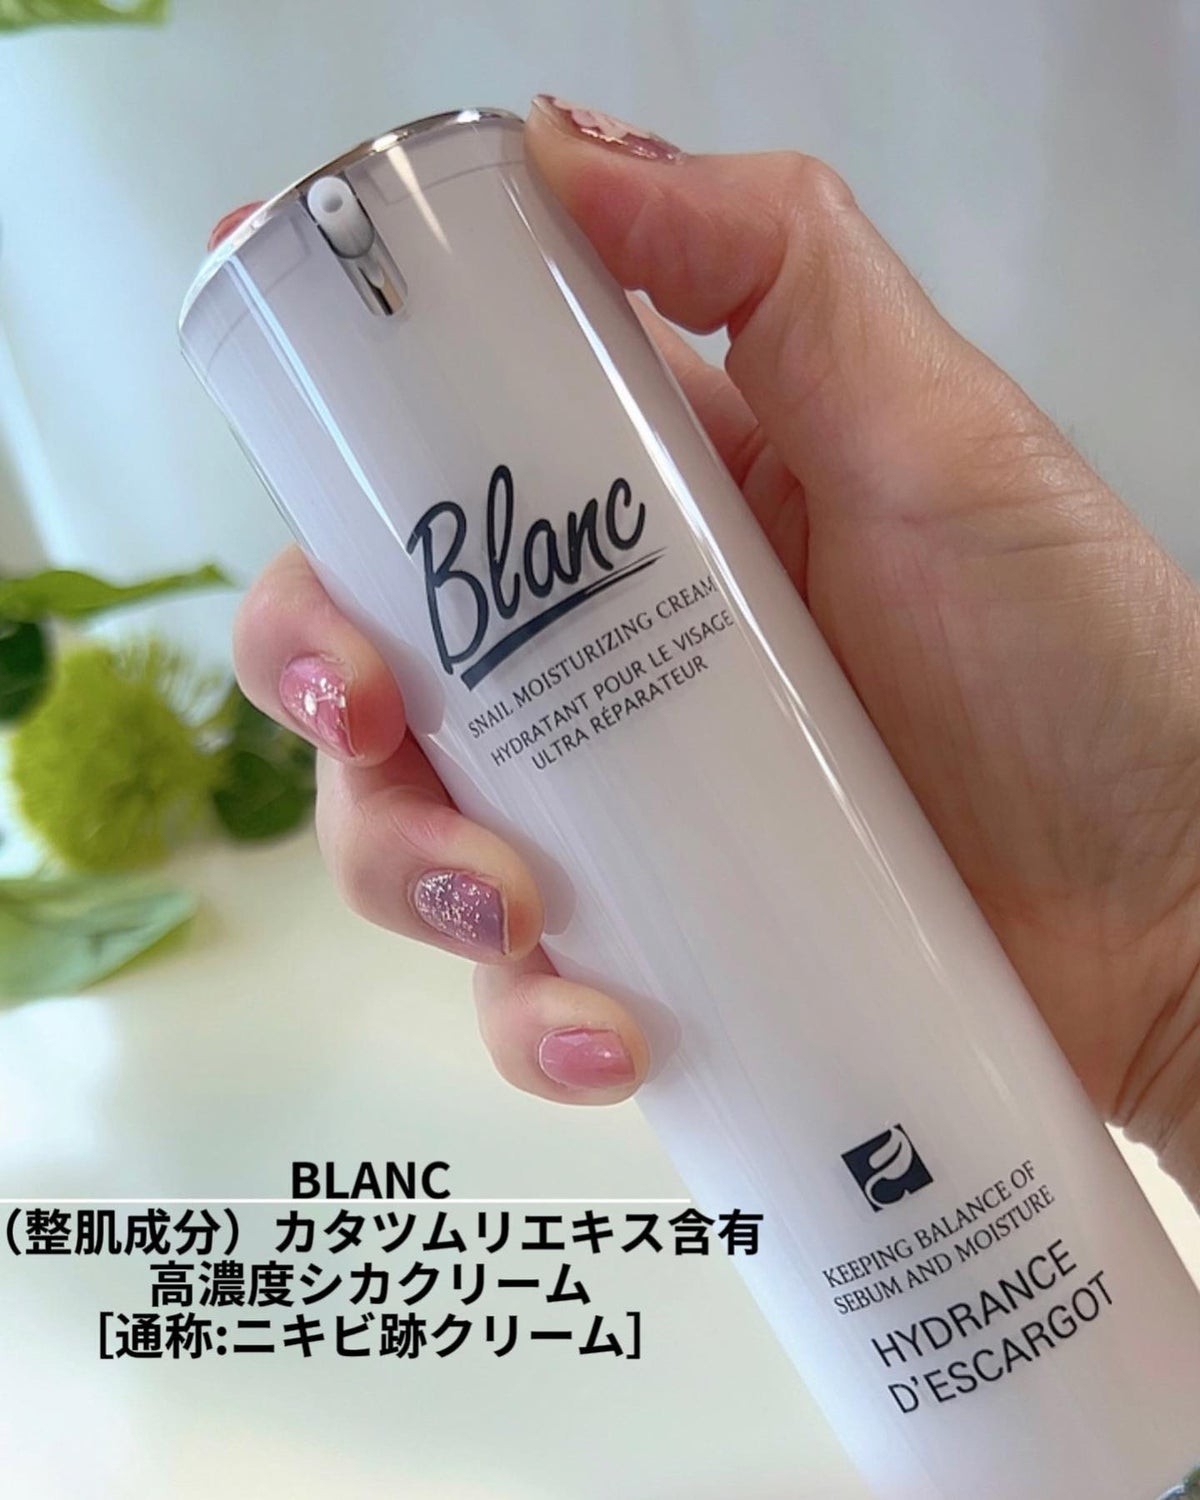 Blanc ブラン カタツムリエキス クリーム シカ 乳液 毛穴 - フェイス 